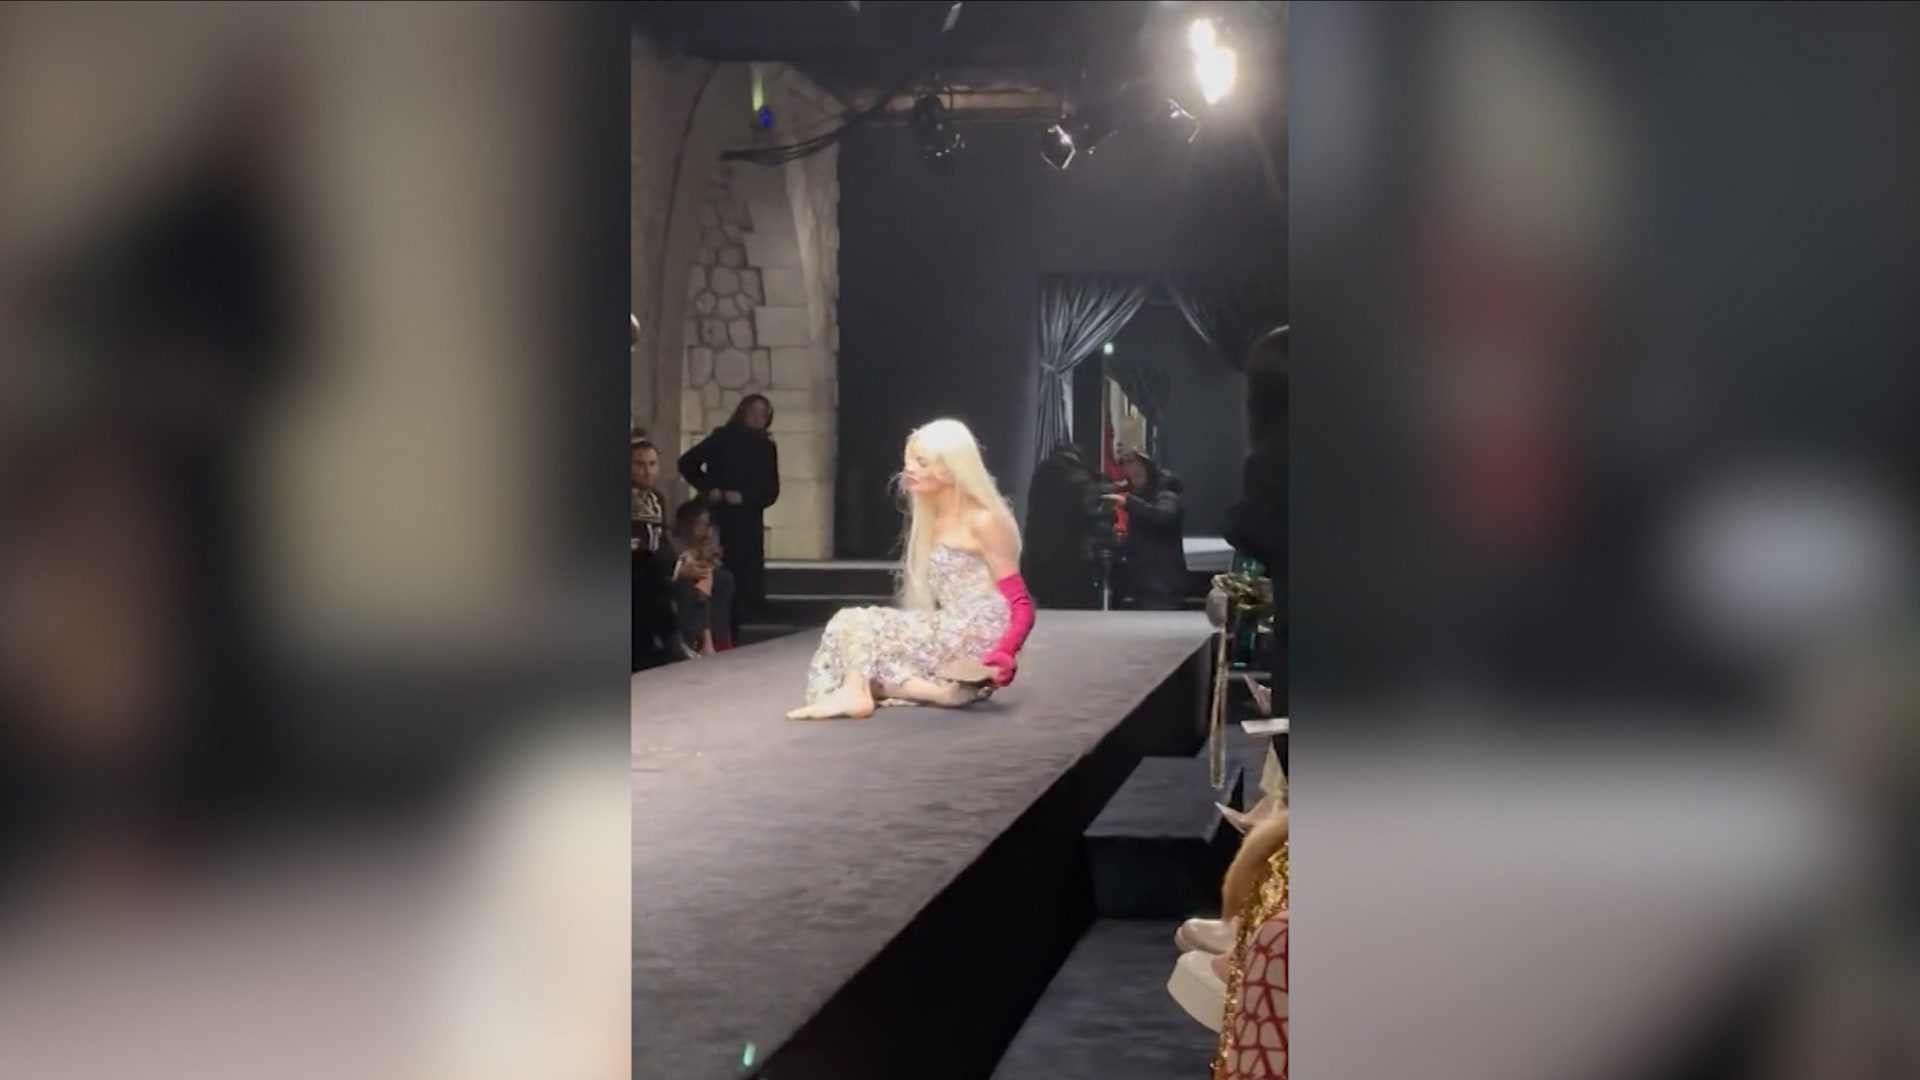 فيديو يظهر عارضة أزياء تقع على الممشى خلال عرض لفالتينو.. شاهد رد فعلها بعدما نهضت